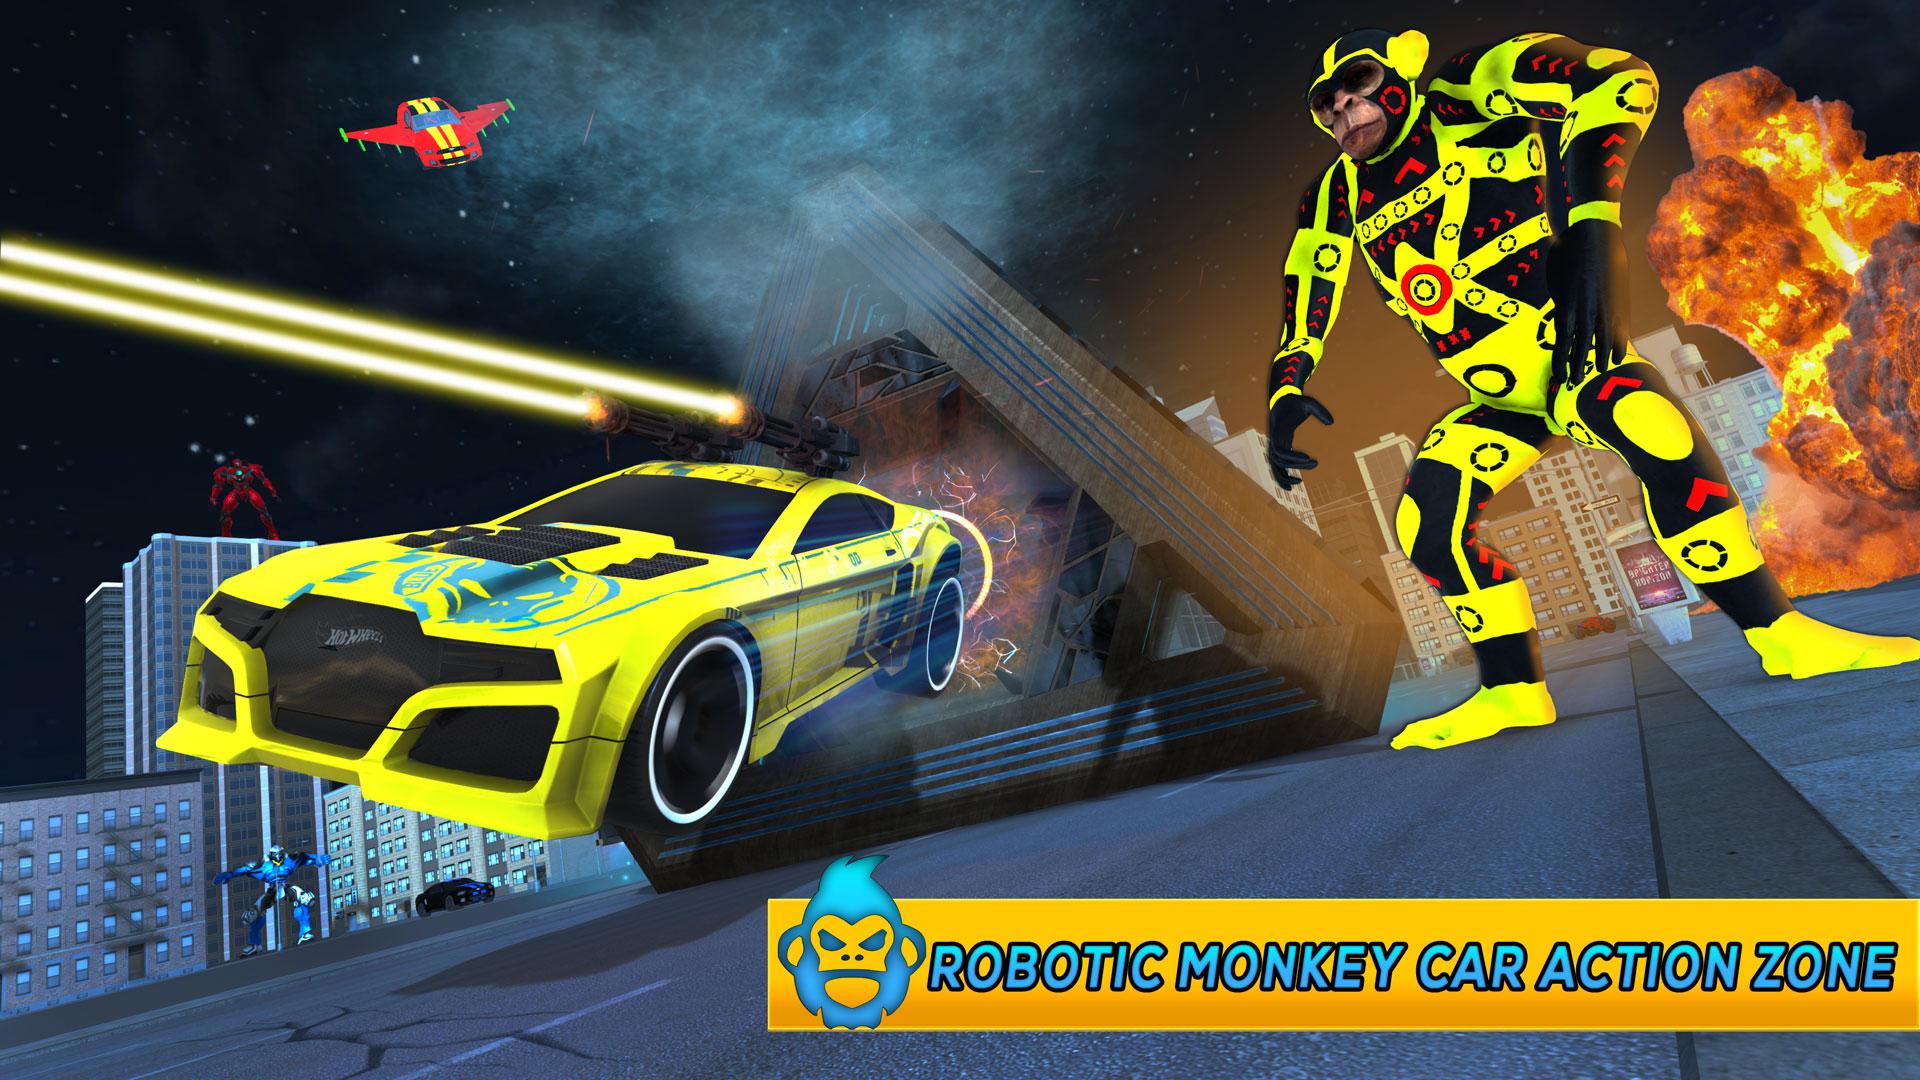 Monkey Car Robot Transformation Game 1.0 Screenshot 5